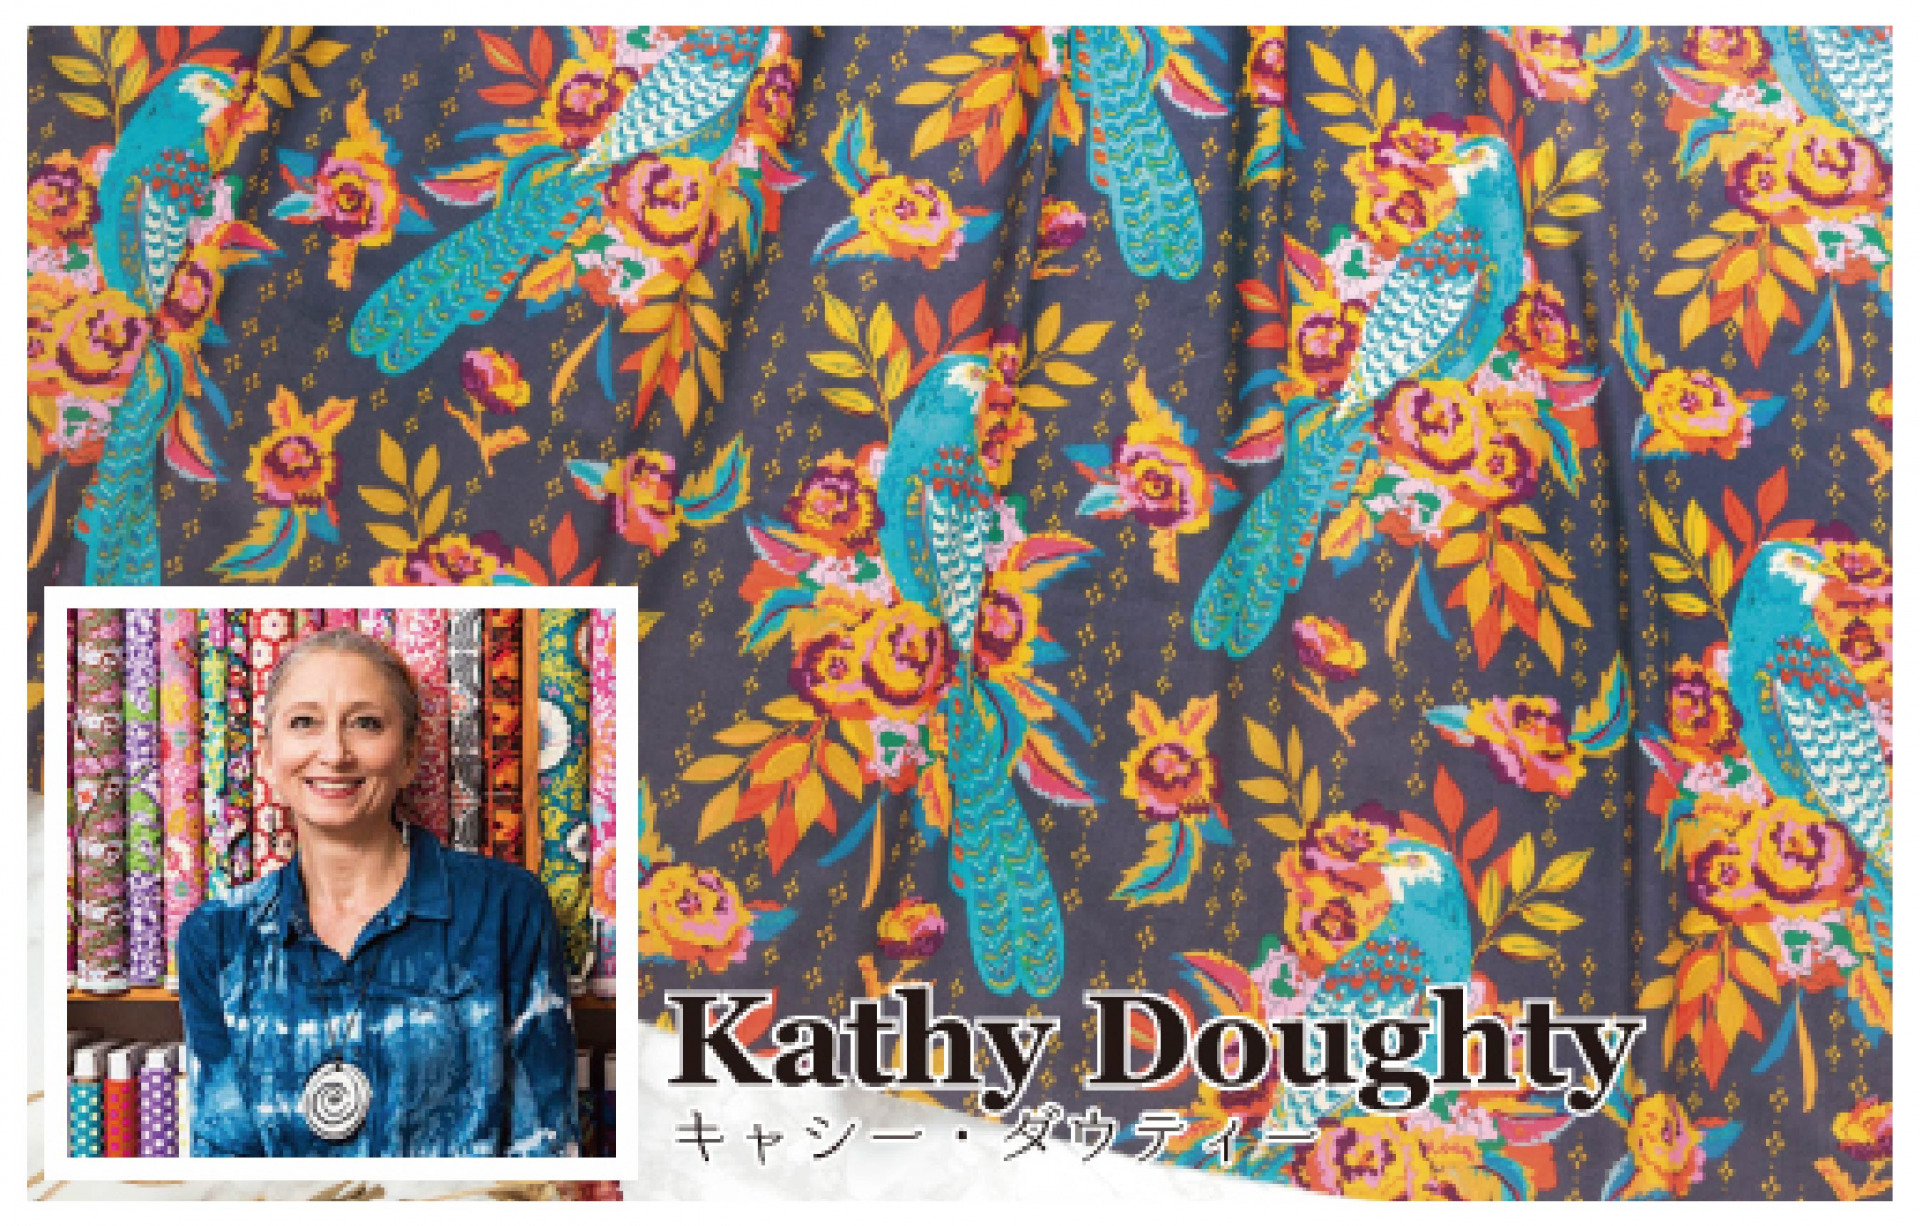 Kathy Doughty